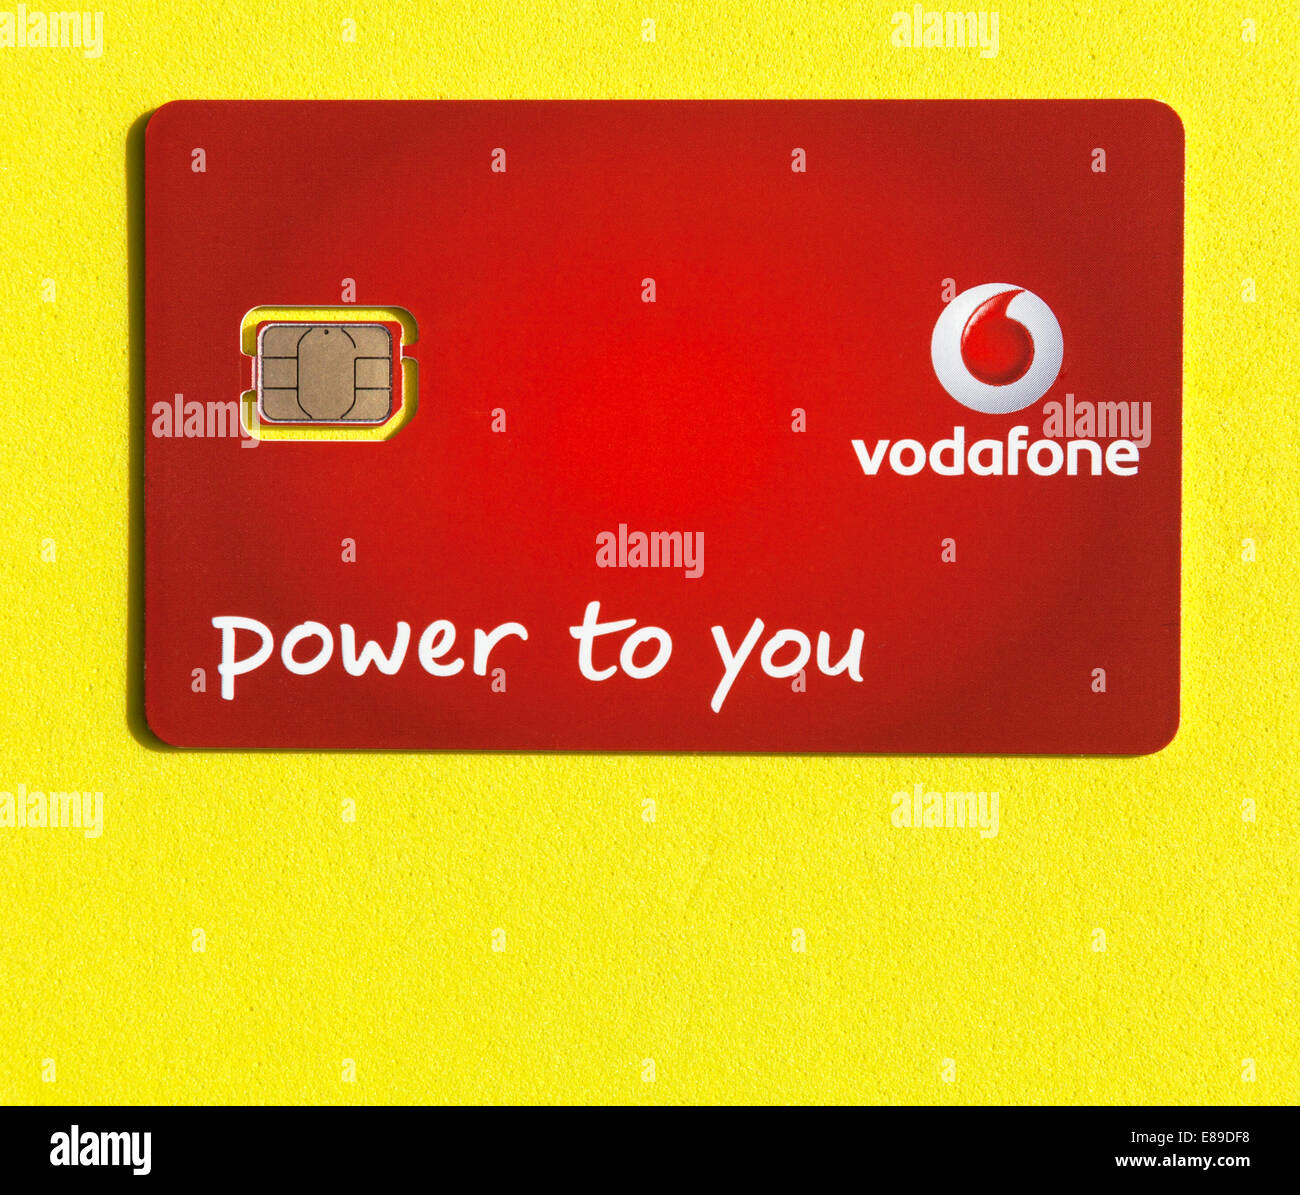 Vodafone sim card Stock Photo